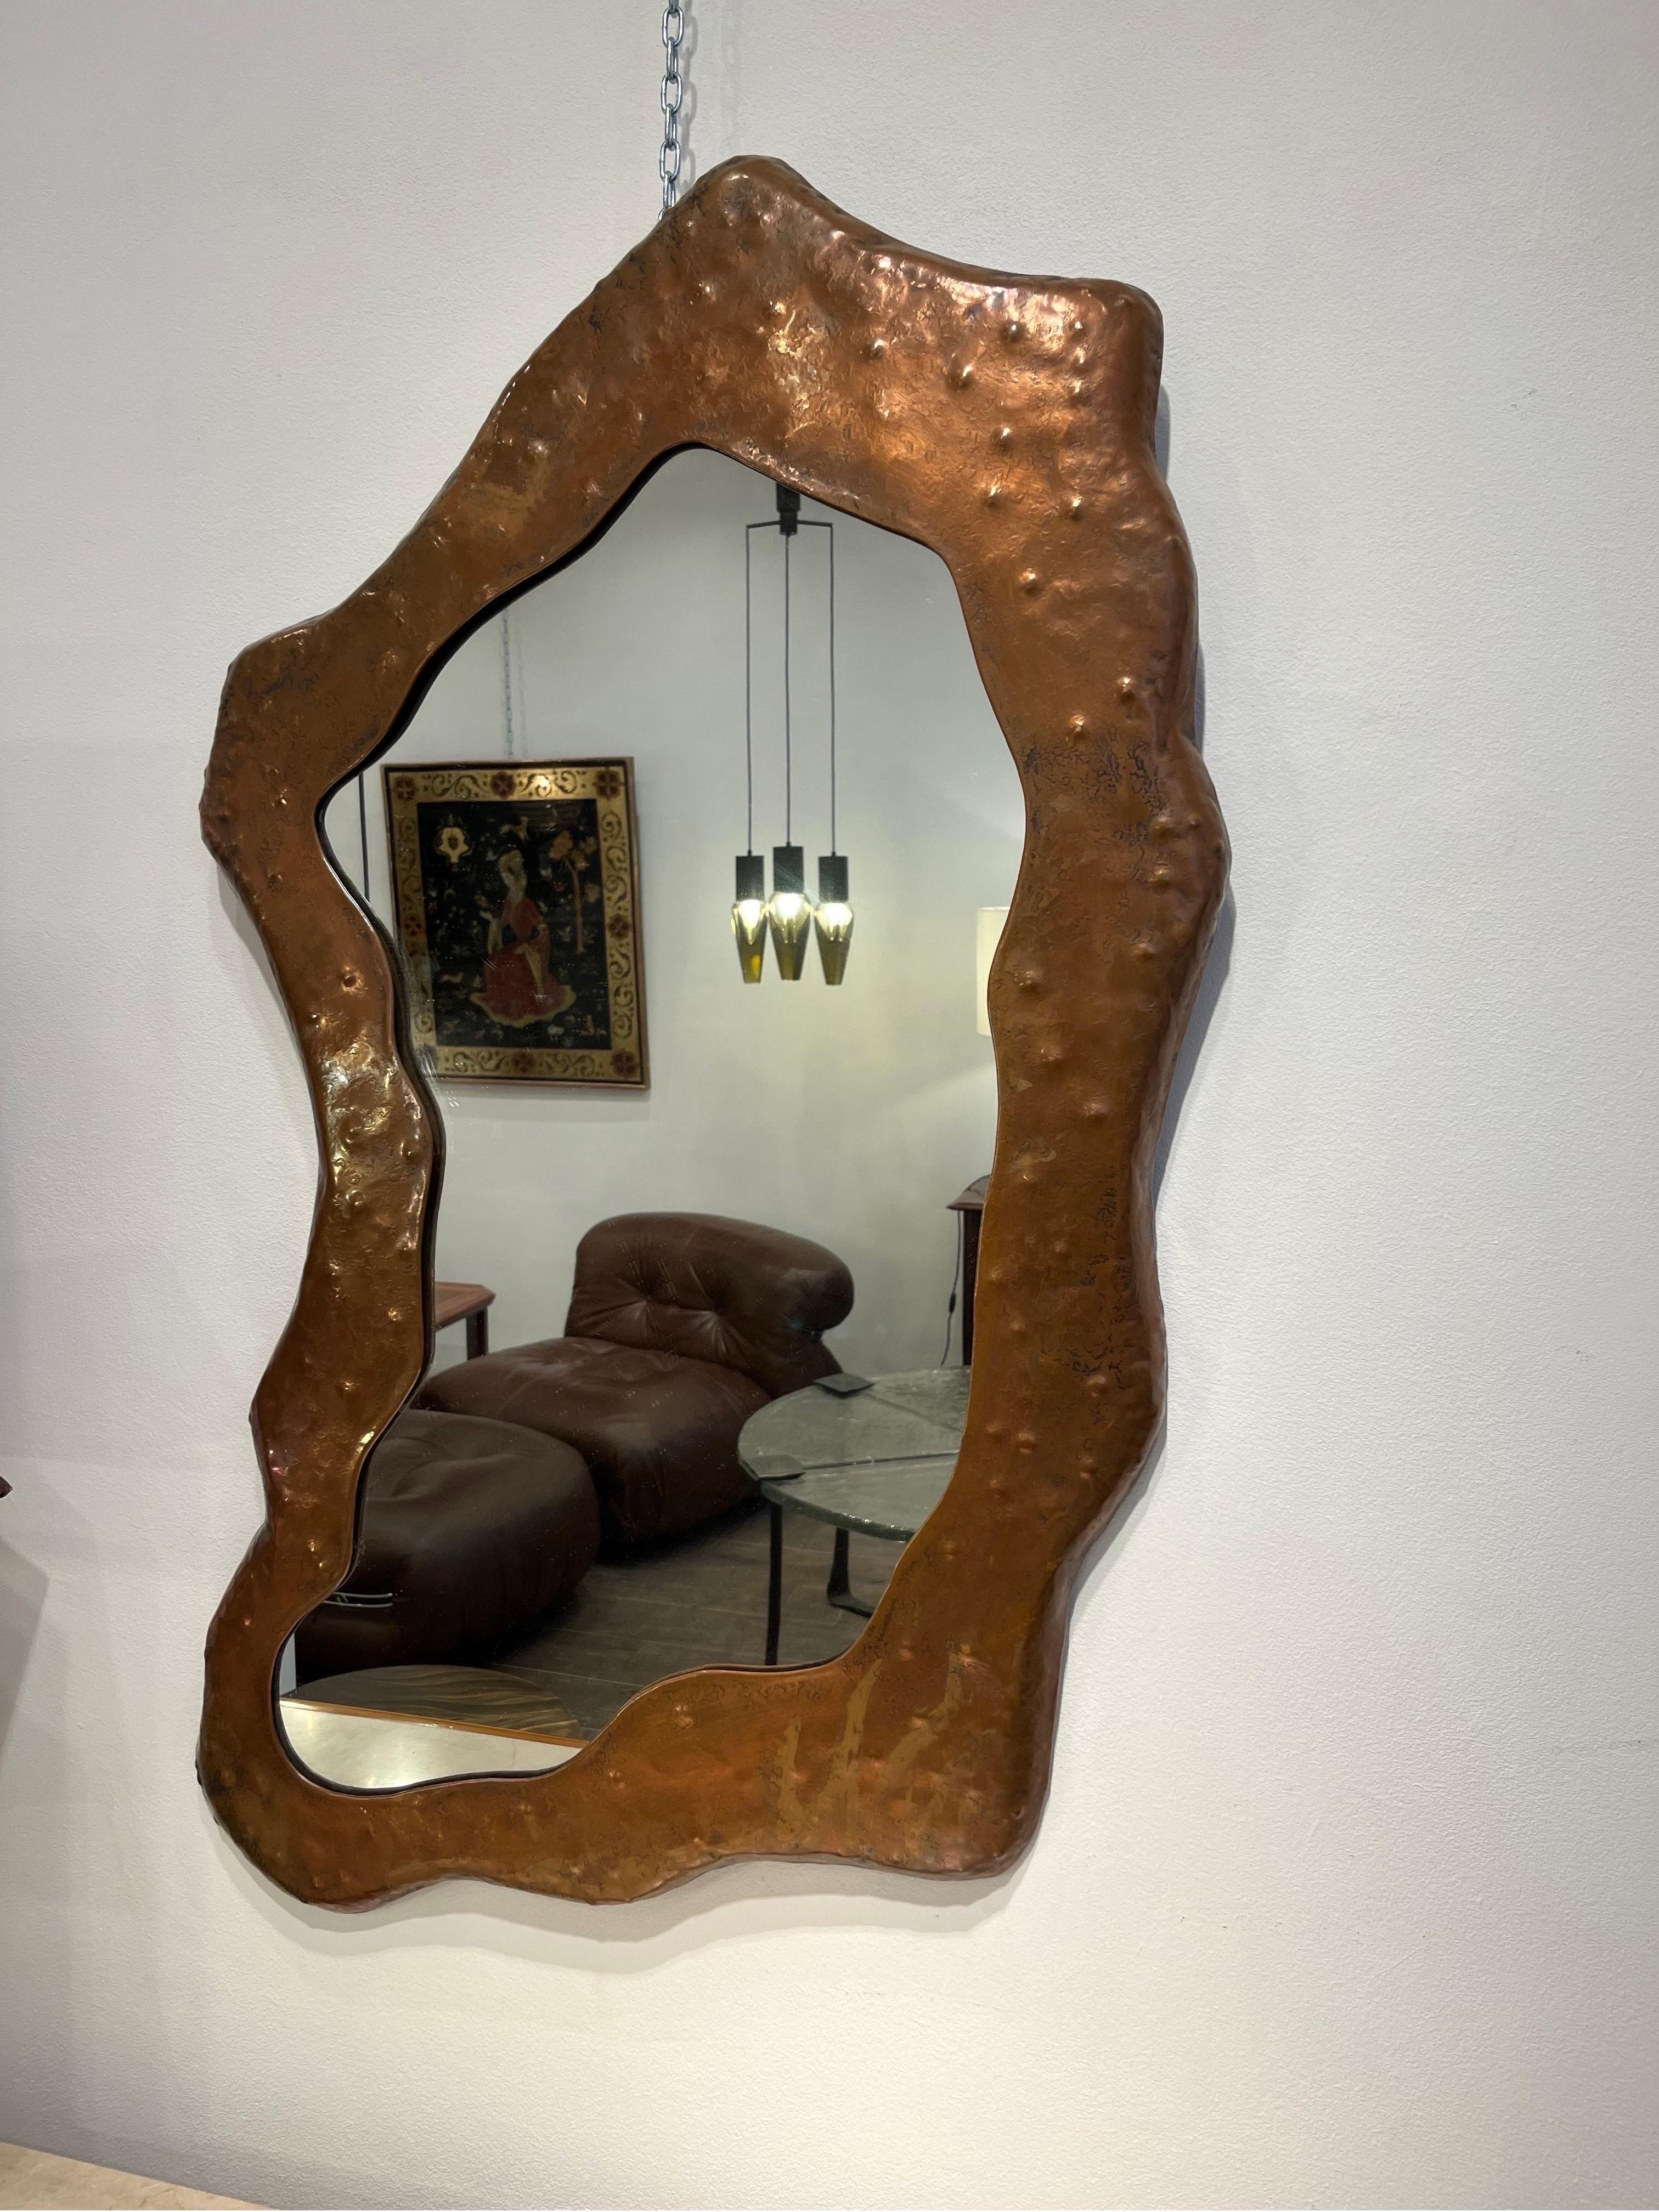 Angelo Bragalini ist ein italienischer Designer, der in den 1960er bis 1970er Jahren tätig war. Er entwarf hauptsächlich Spiegel aus Kupfer. Dieser besondere Spiegel ist durch seine asymmetrische Form interessant. Das Metall ist repoussiert, um die